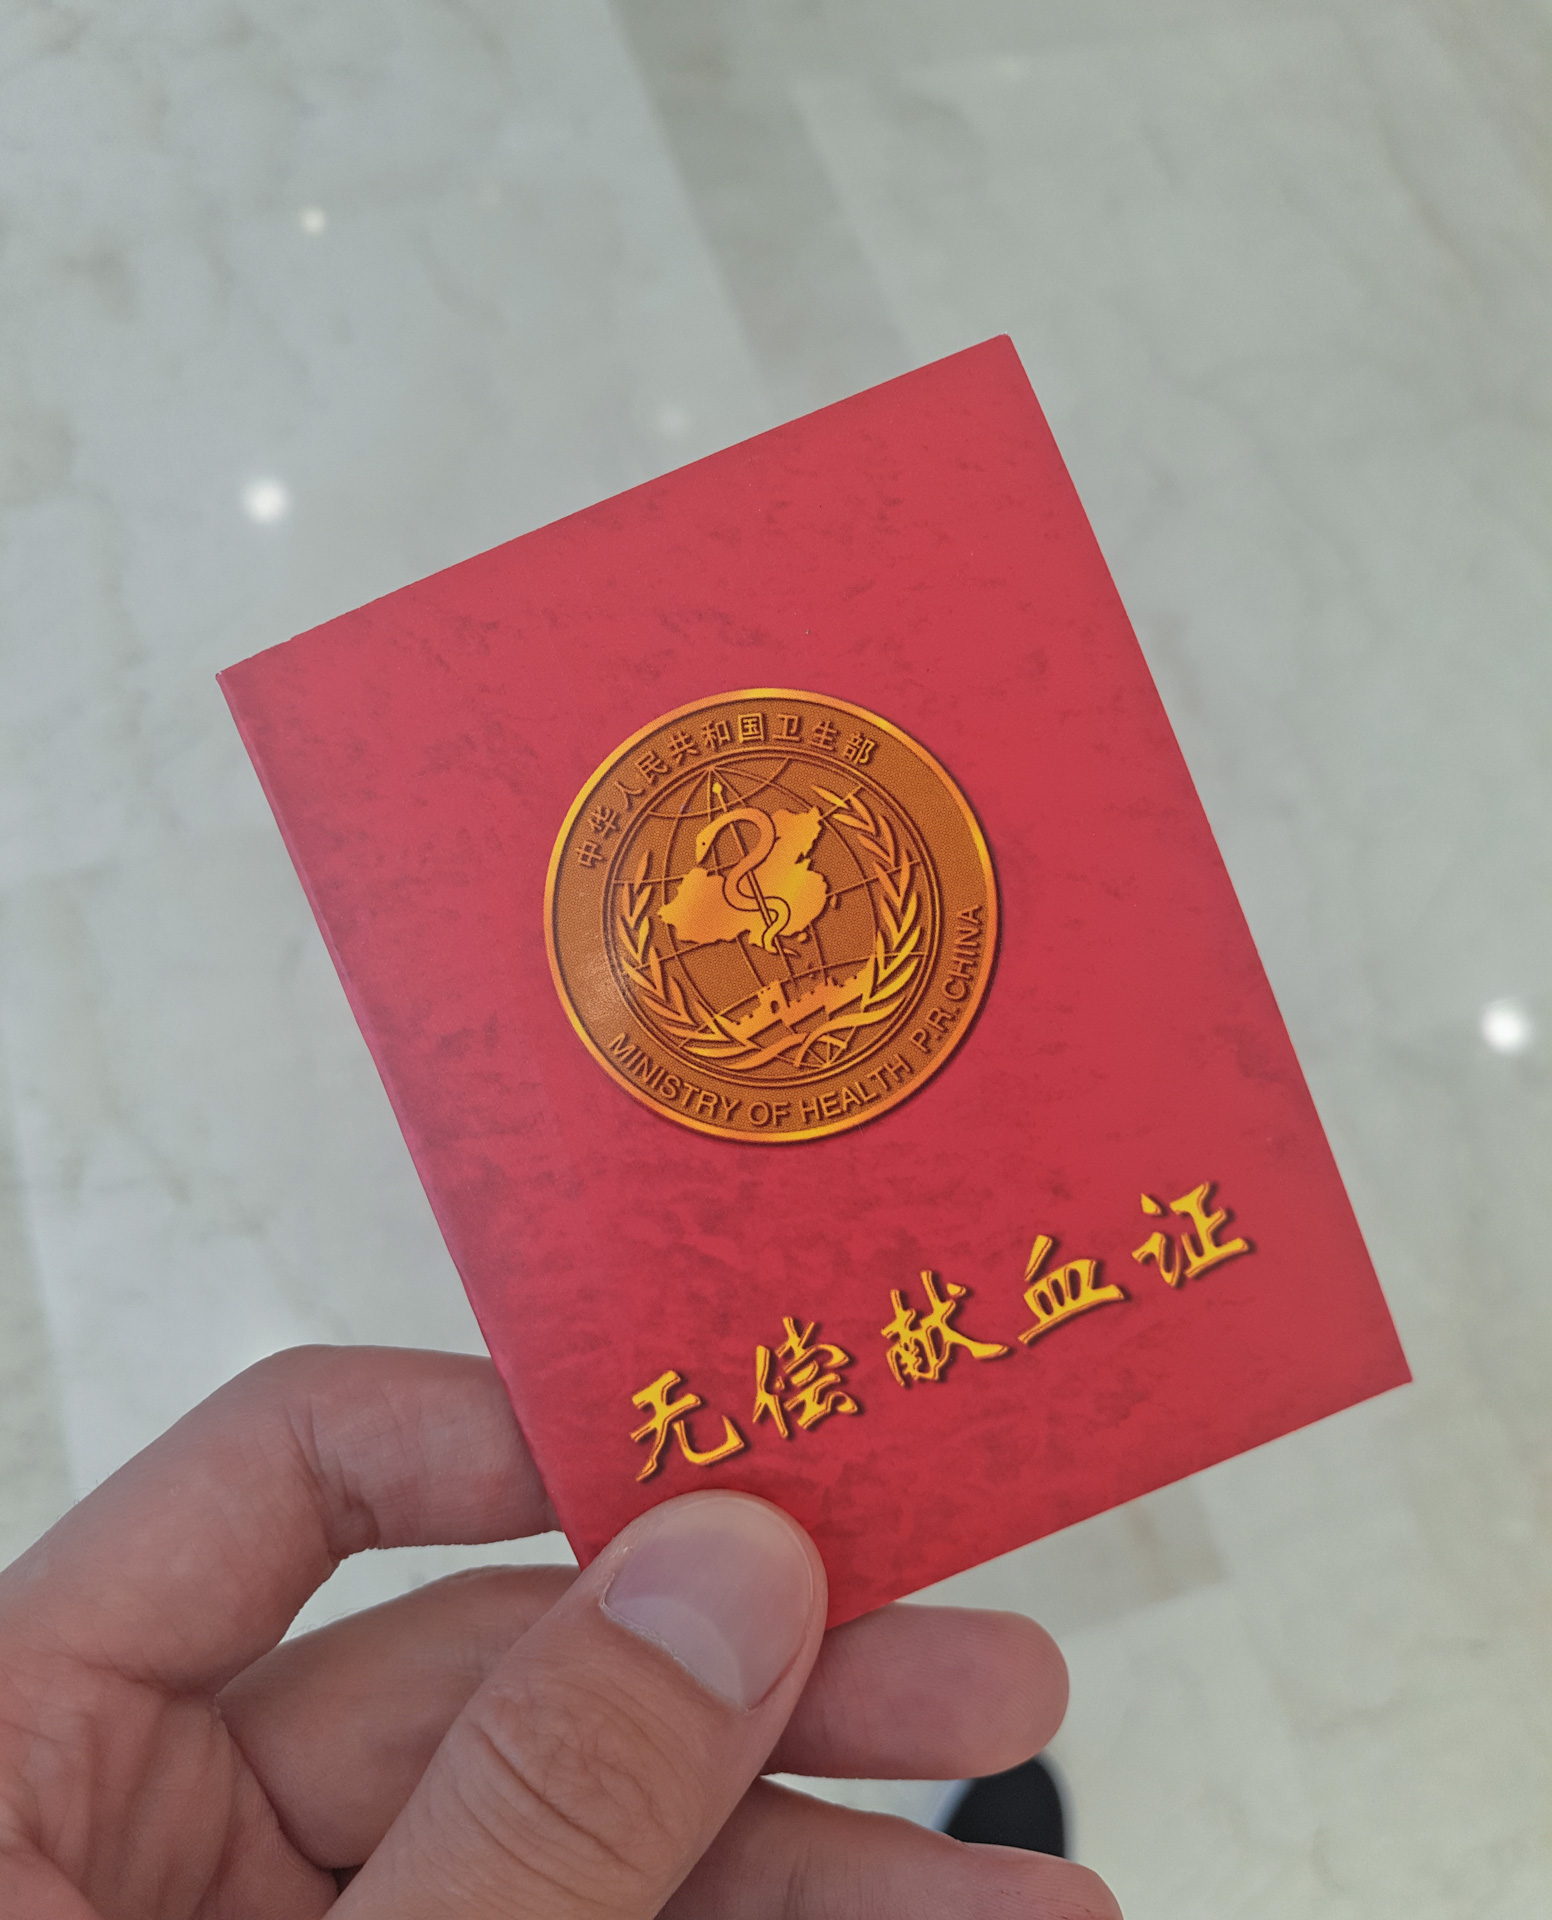 成都 » 第 74 届中国教育装备展 x 金沙遗址博物馆 x 献血记